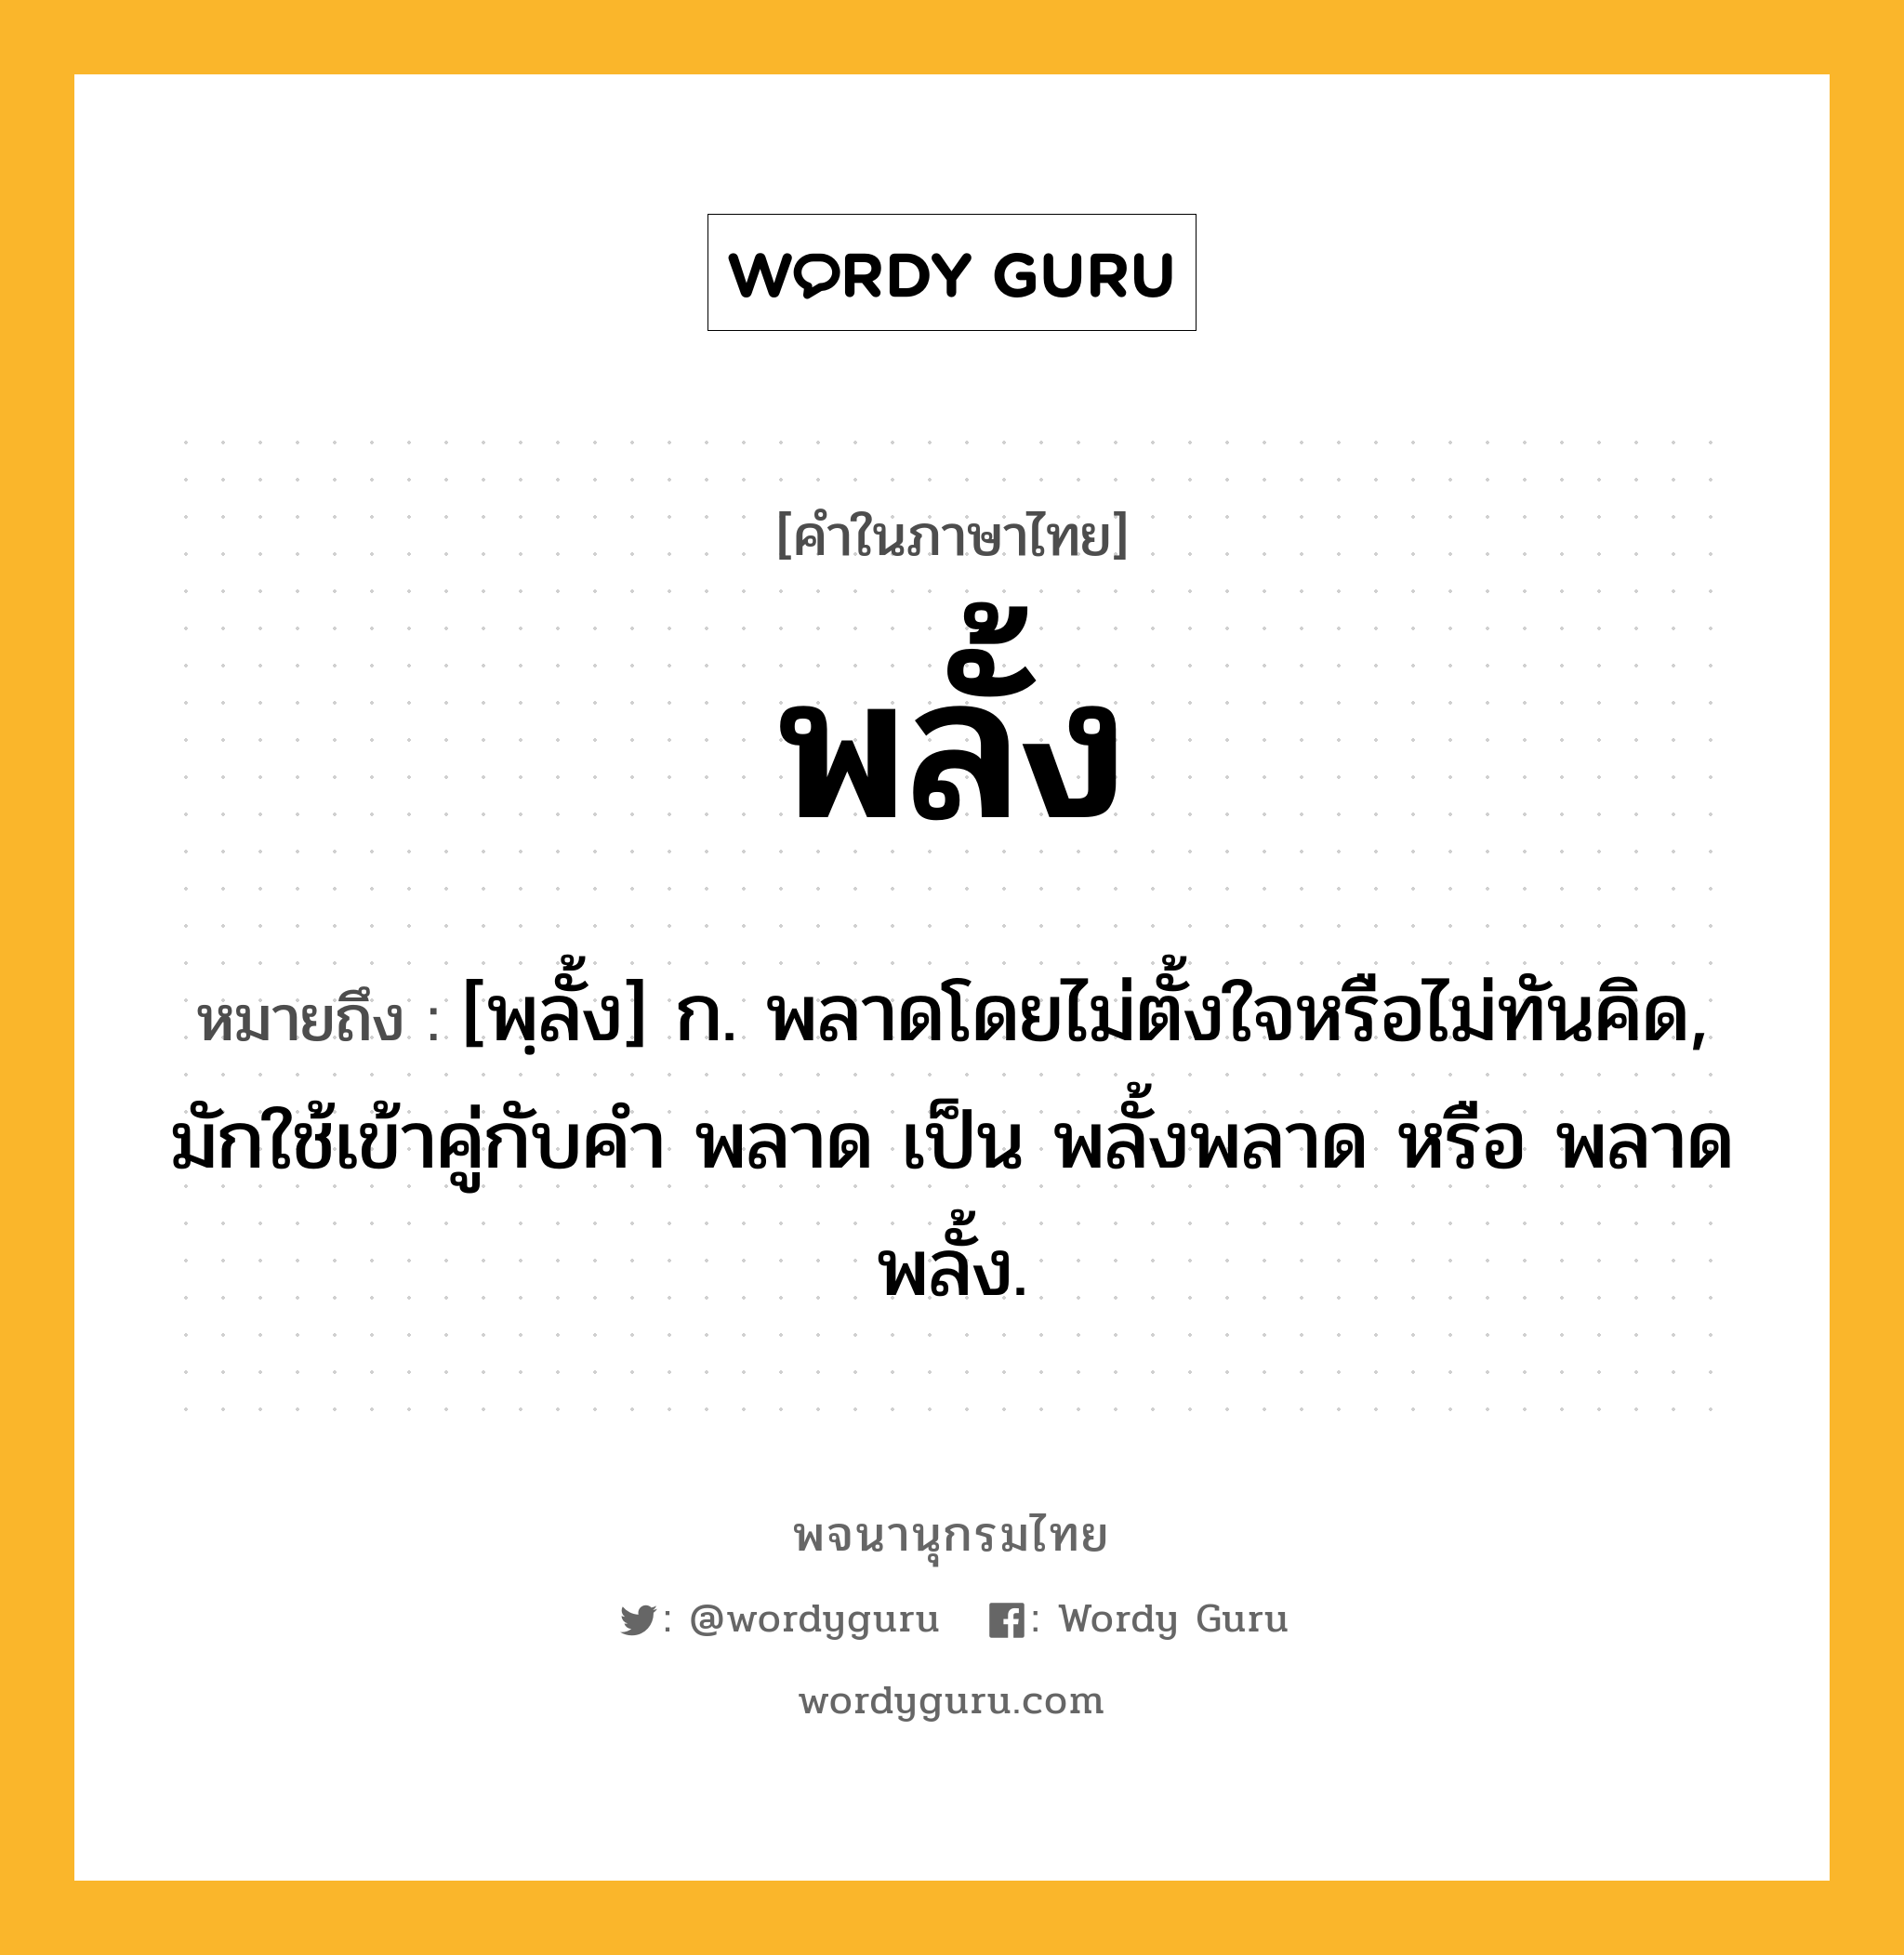 พลั้ง ความหมาย หมายถึงอะไร?, คำในภาษาไทย พลั้ง หมายถึง [พฺลั้ง] ก. พลาดโดยไม่ตั้งใจหรือไม่ทันคิด, มักใช้เข้าคู่กับคำ พลาด เป็น พลั้งพลาด หรือ พลาดพลั้ง.